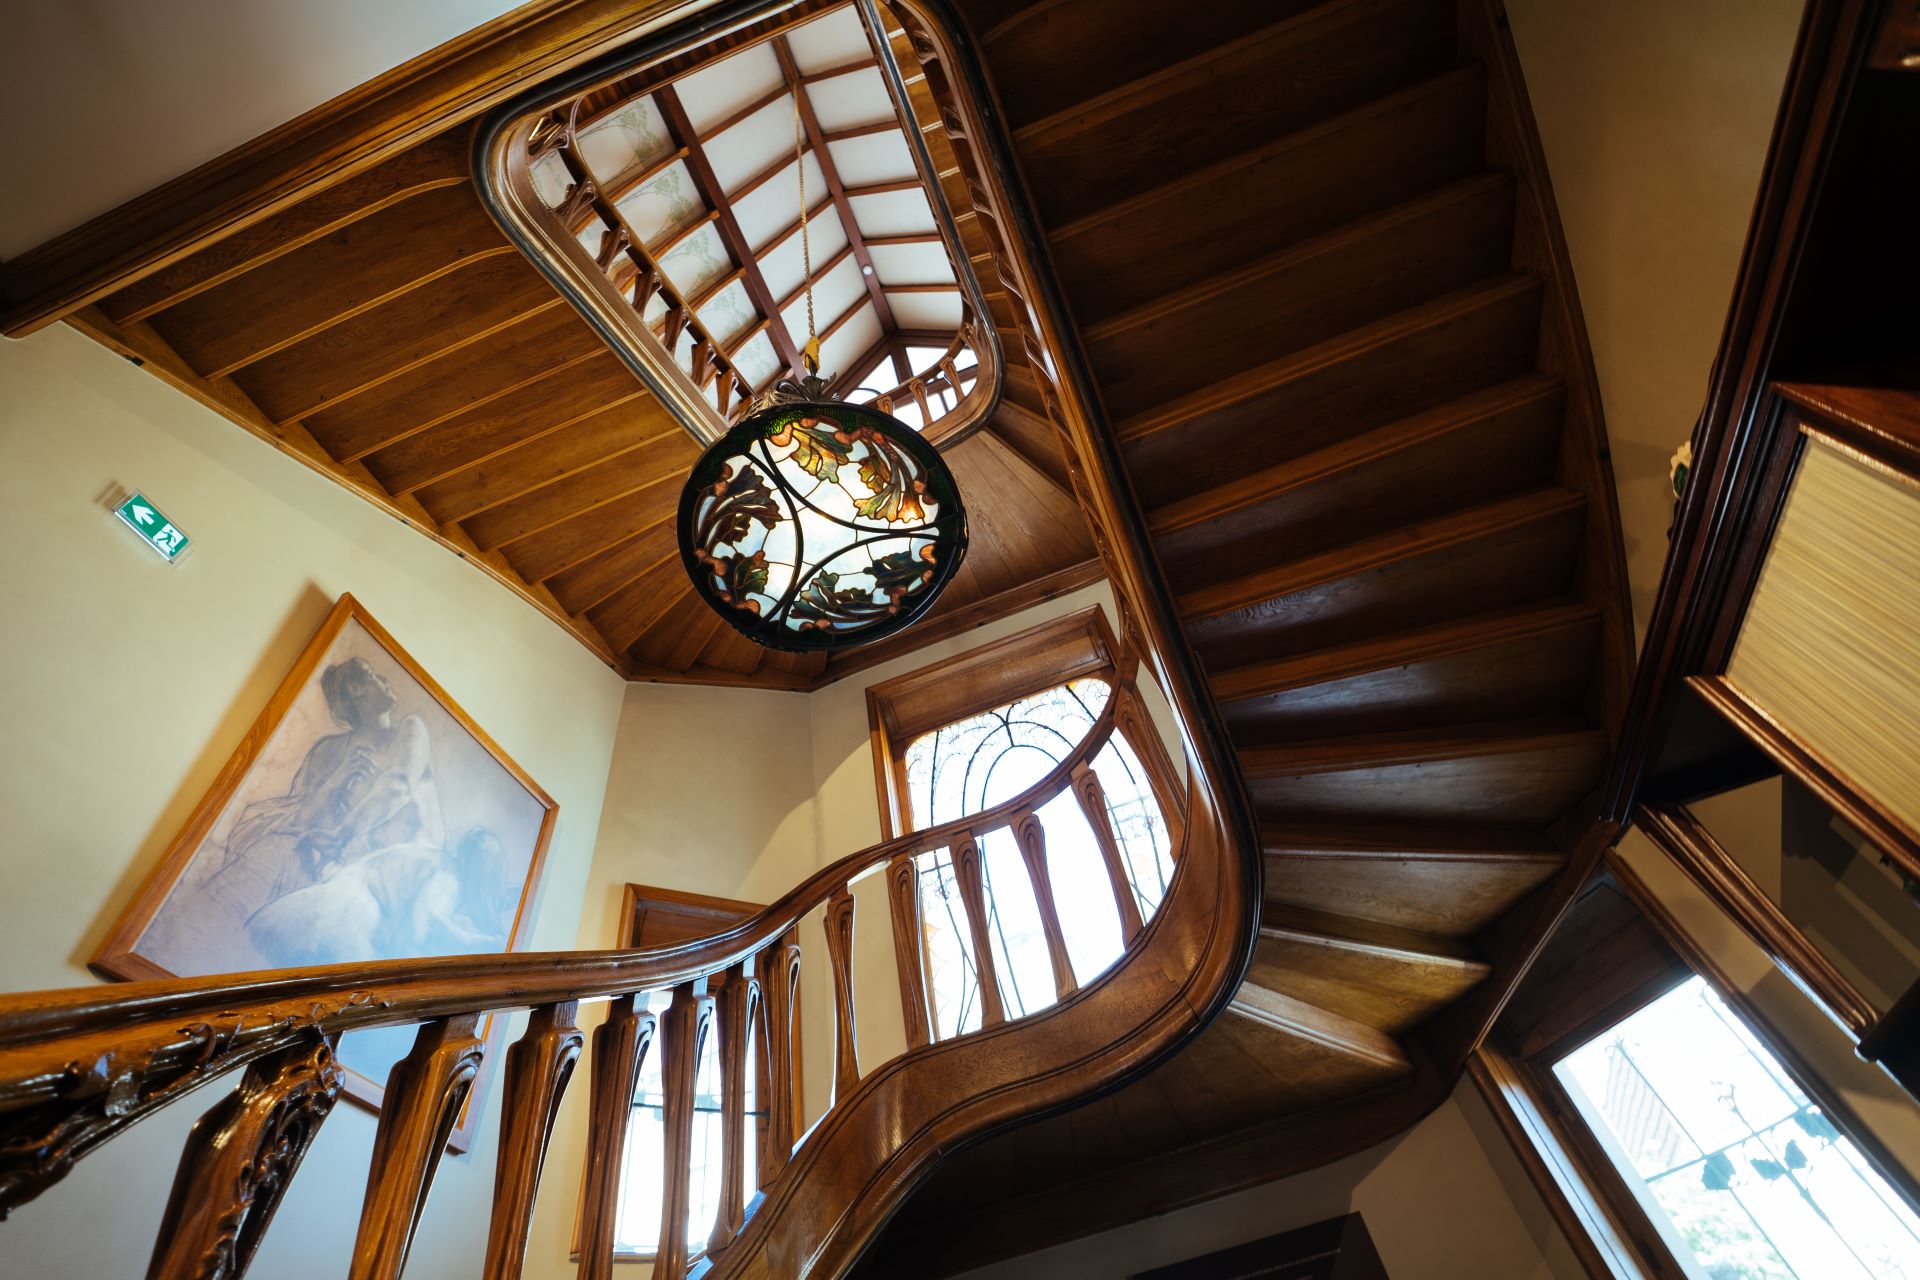 En bas, on aperçoit un escalier en bois qui s'inspire des courbes de la nature. Une lampe en verre teinté est suspendue au milieu de l'image.